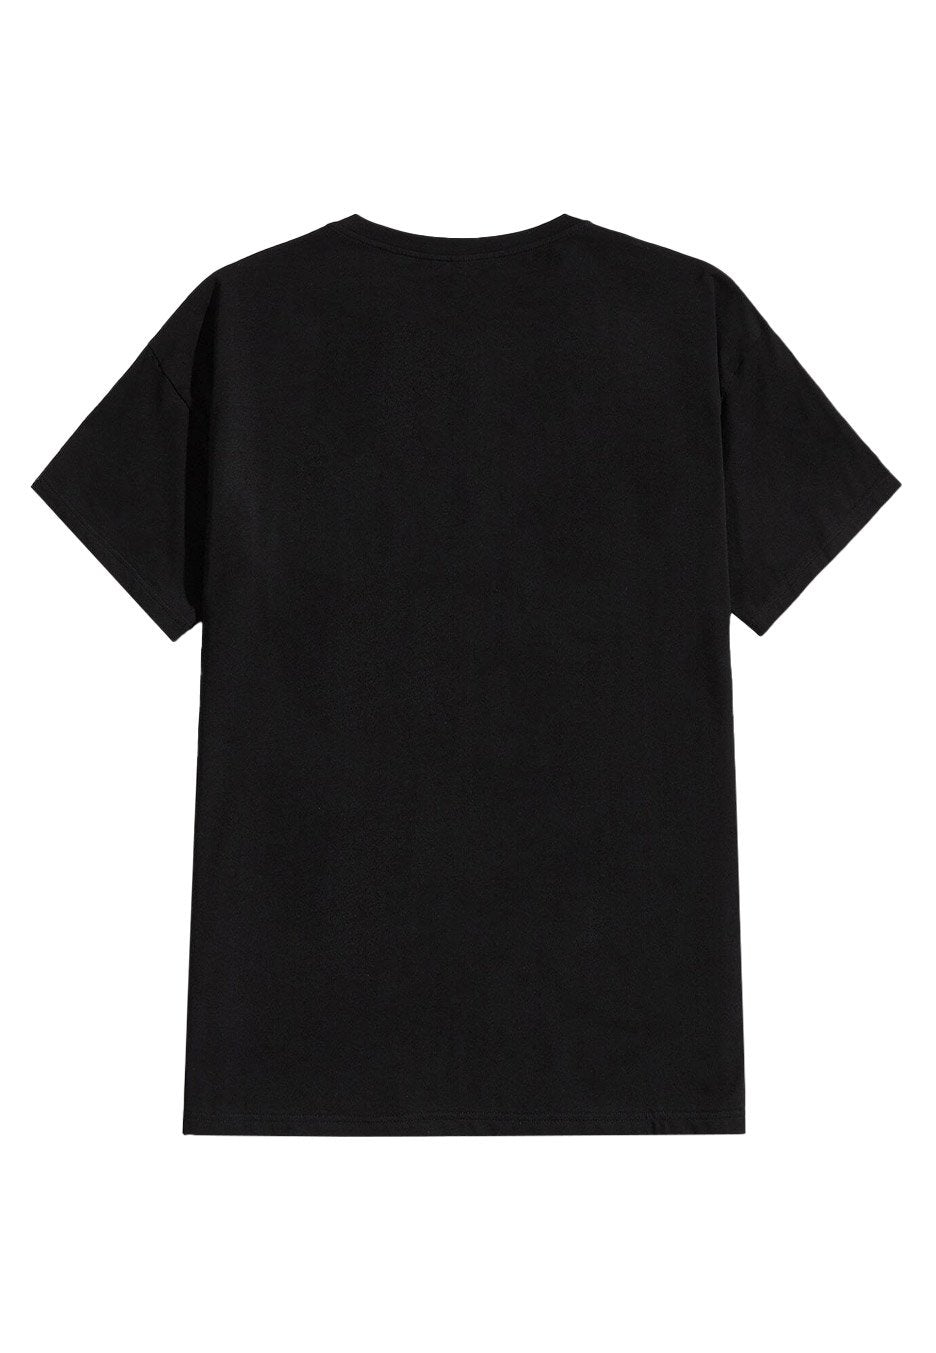 Beartooth - Below - T-Shirt